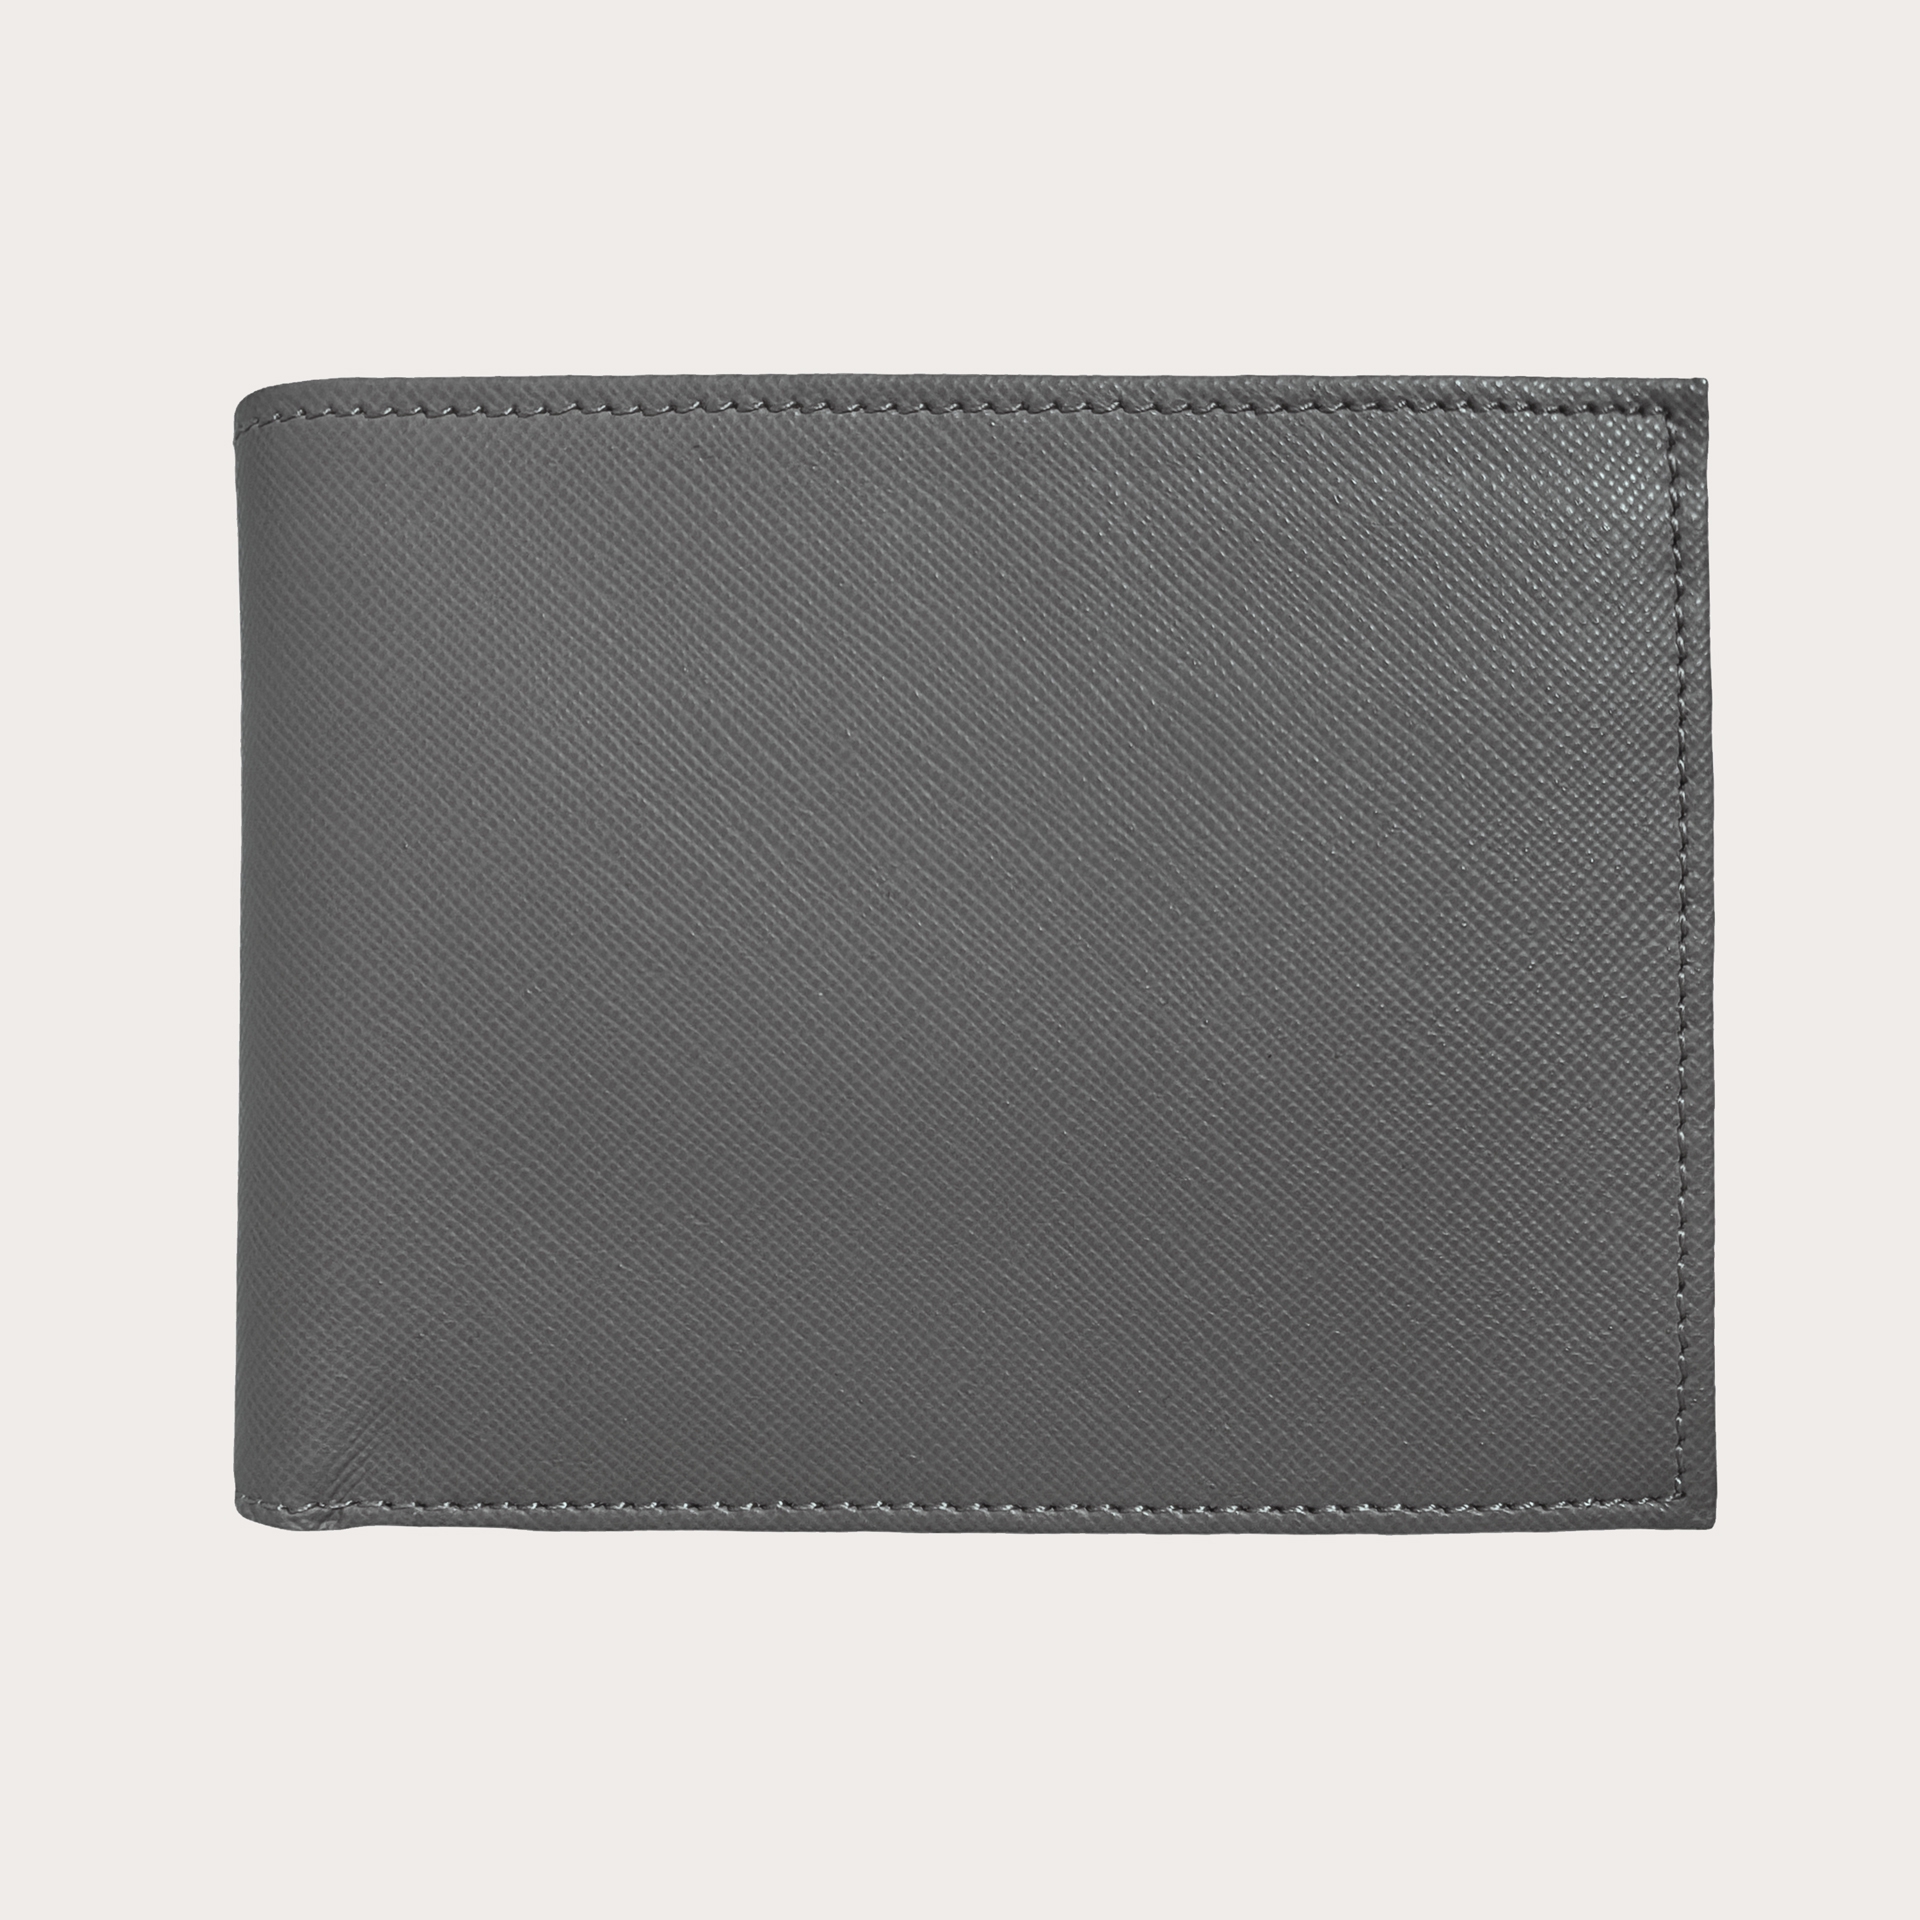 Leder brieftasche mit Münzfach, schwarz saffiano